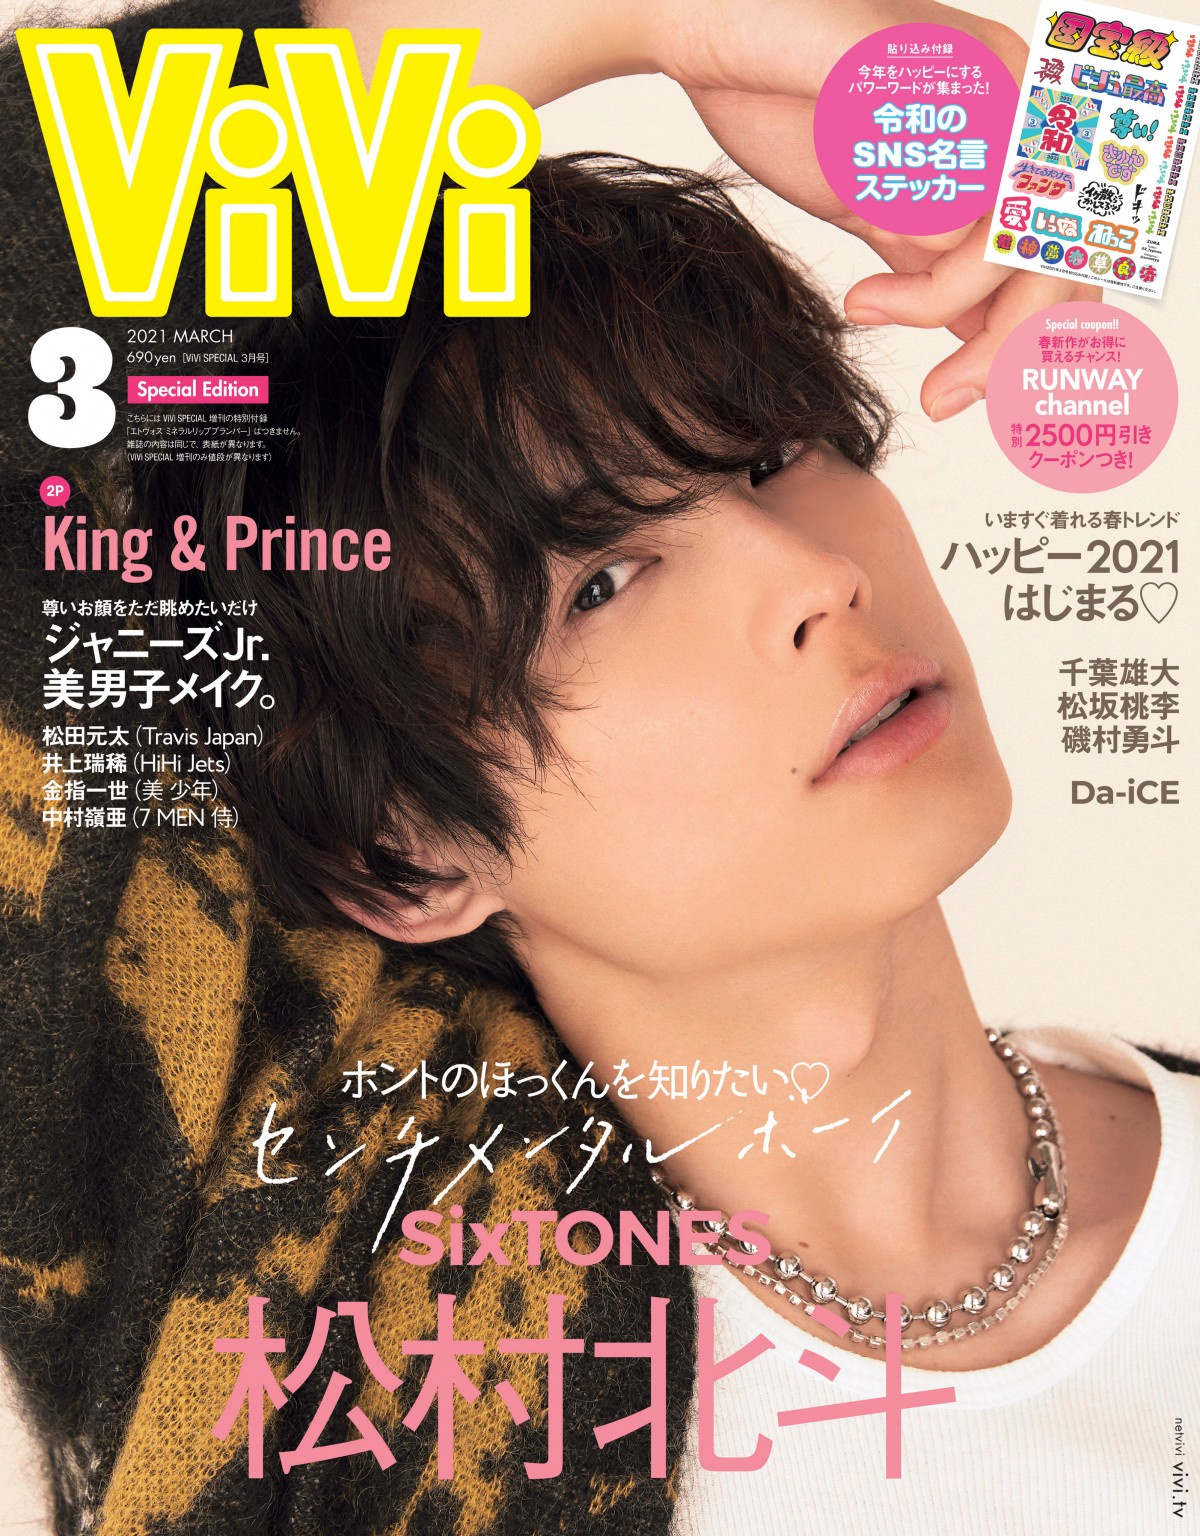 Sixtones松村北斗 エモい 表情を次々披露 ソロで Vivi 特別版表紙に Oricon News